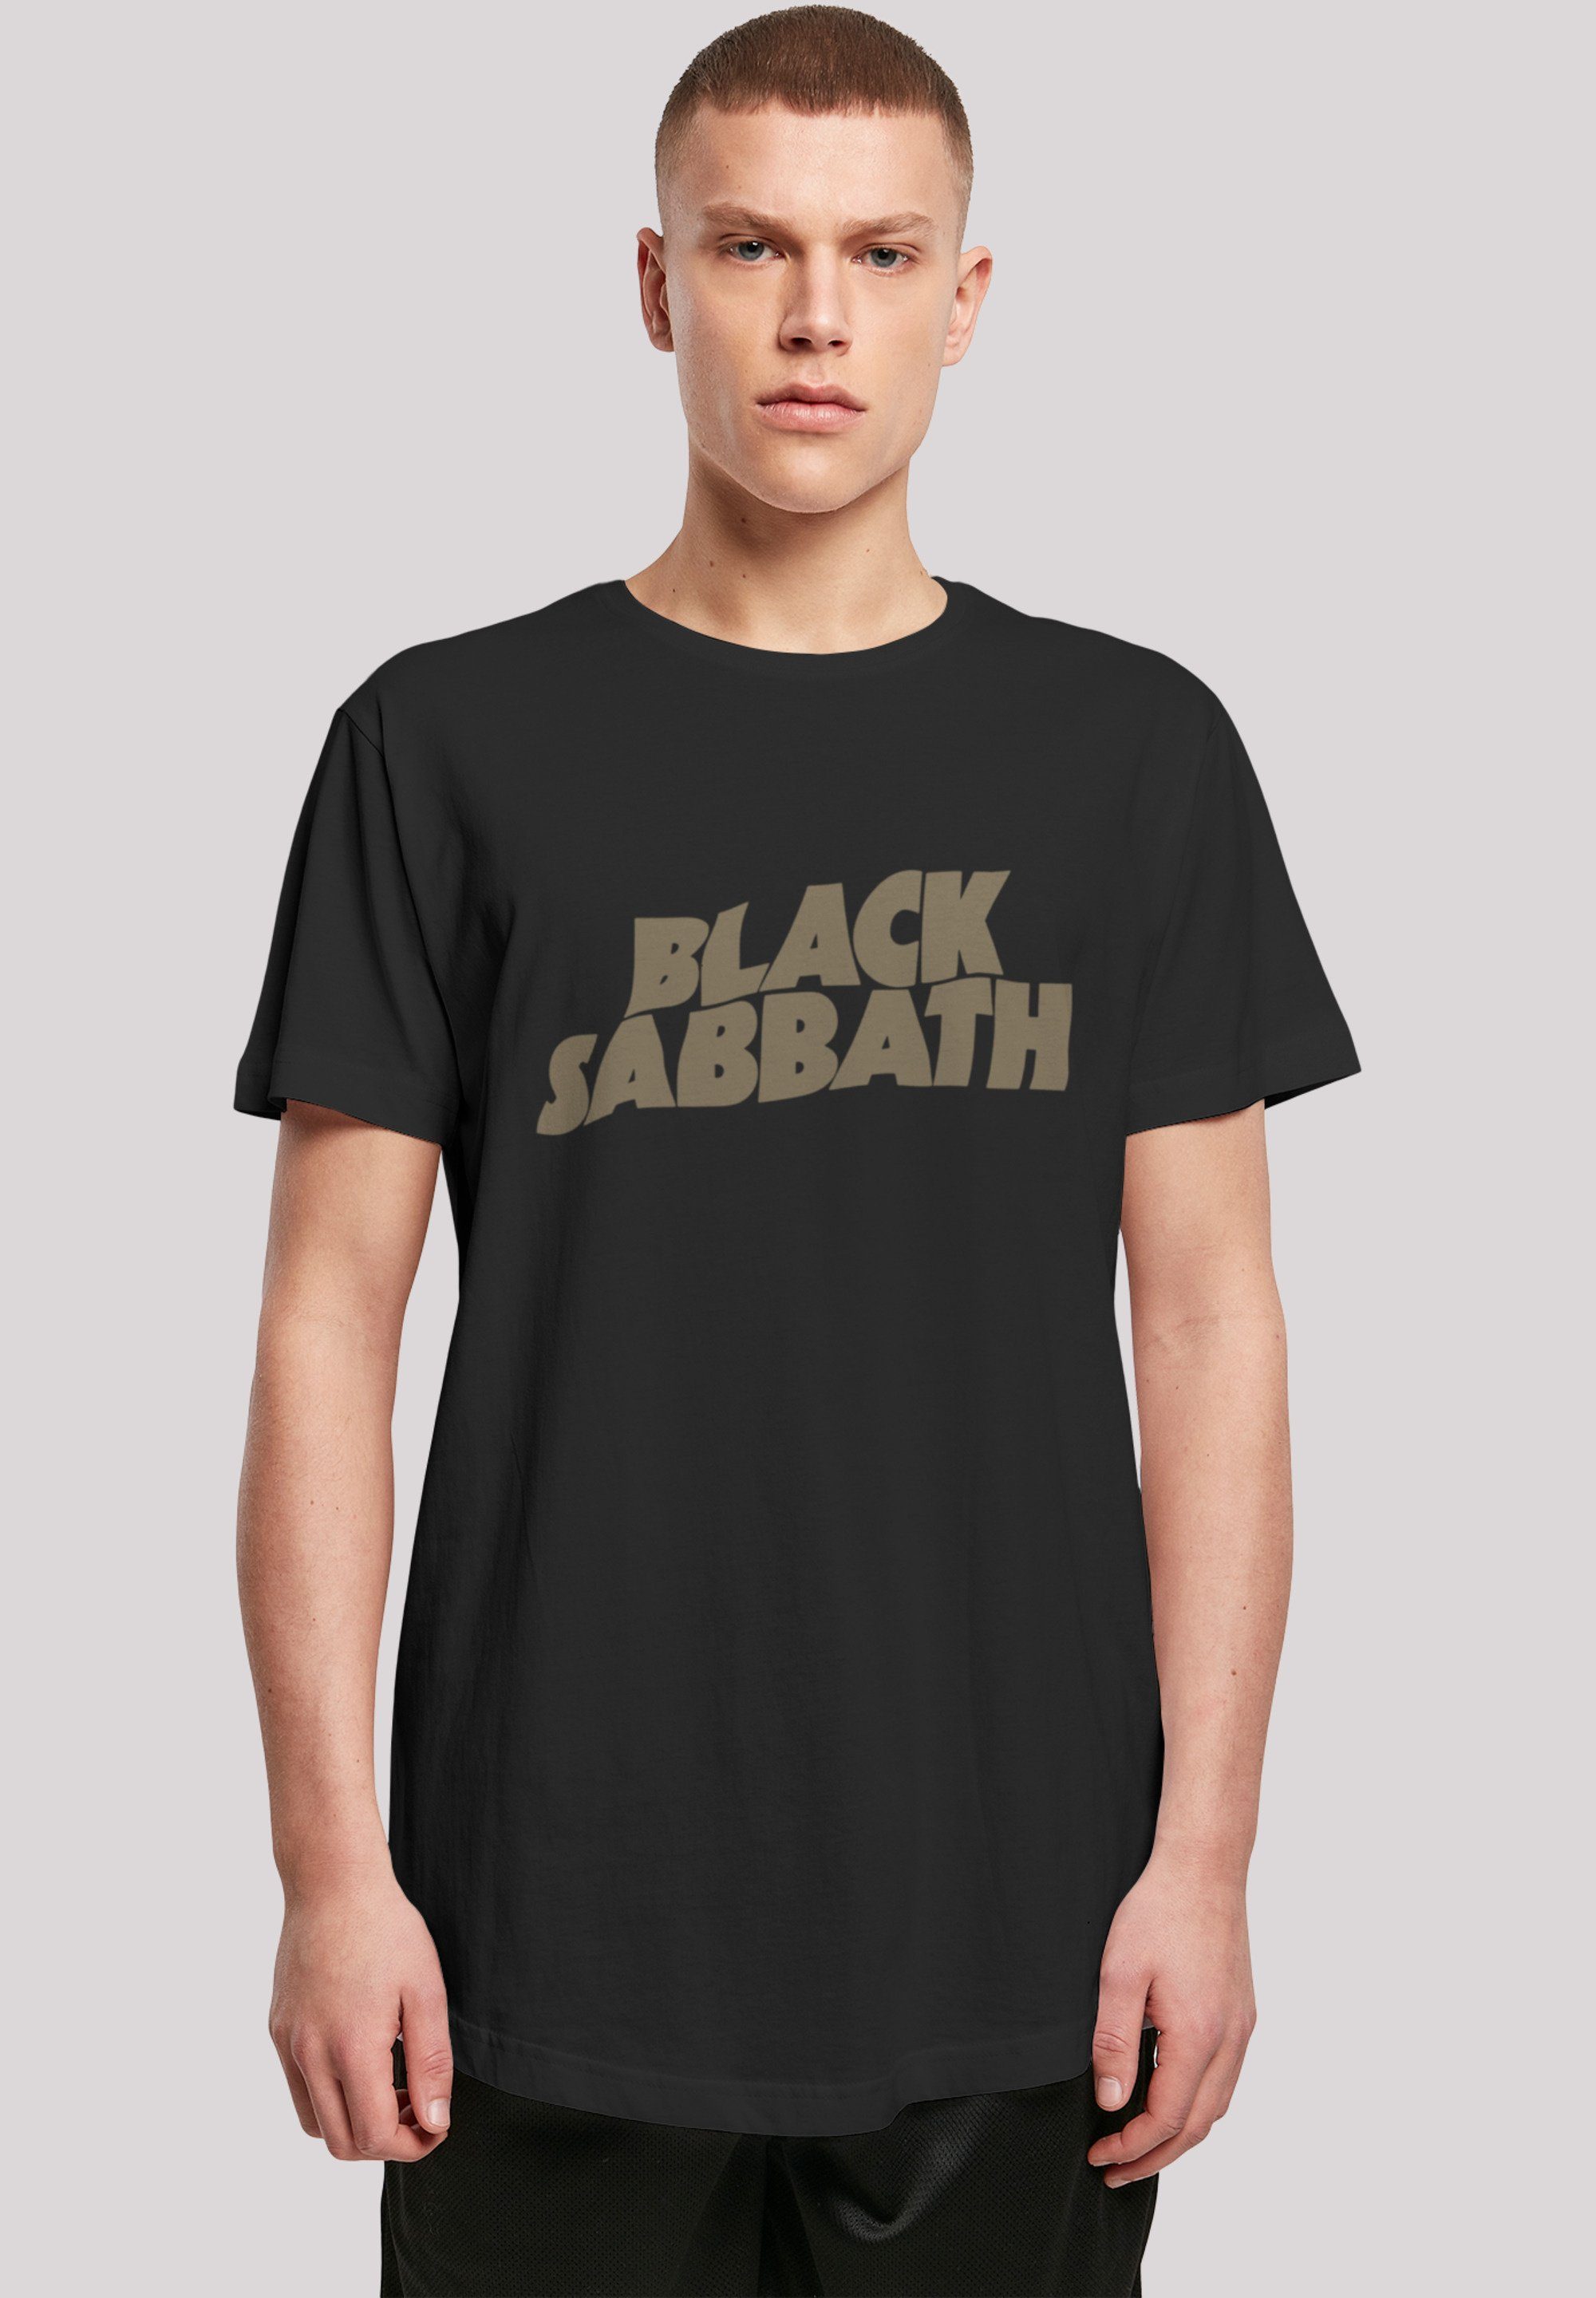 F4NT4STIC T-Shirt Black Sehr Band US Zip weicher Tour Tragekomfort Print, mit Black Metal 1978 Baumwollstoff hohem Sabbath